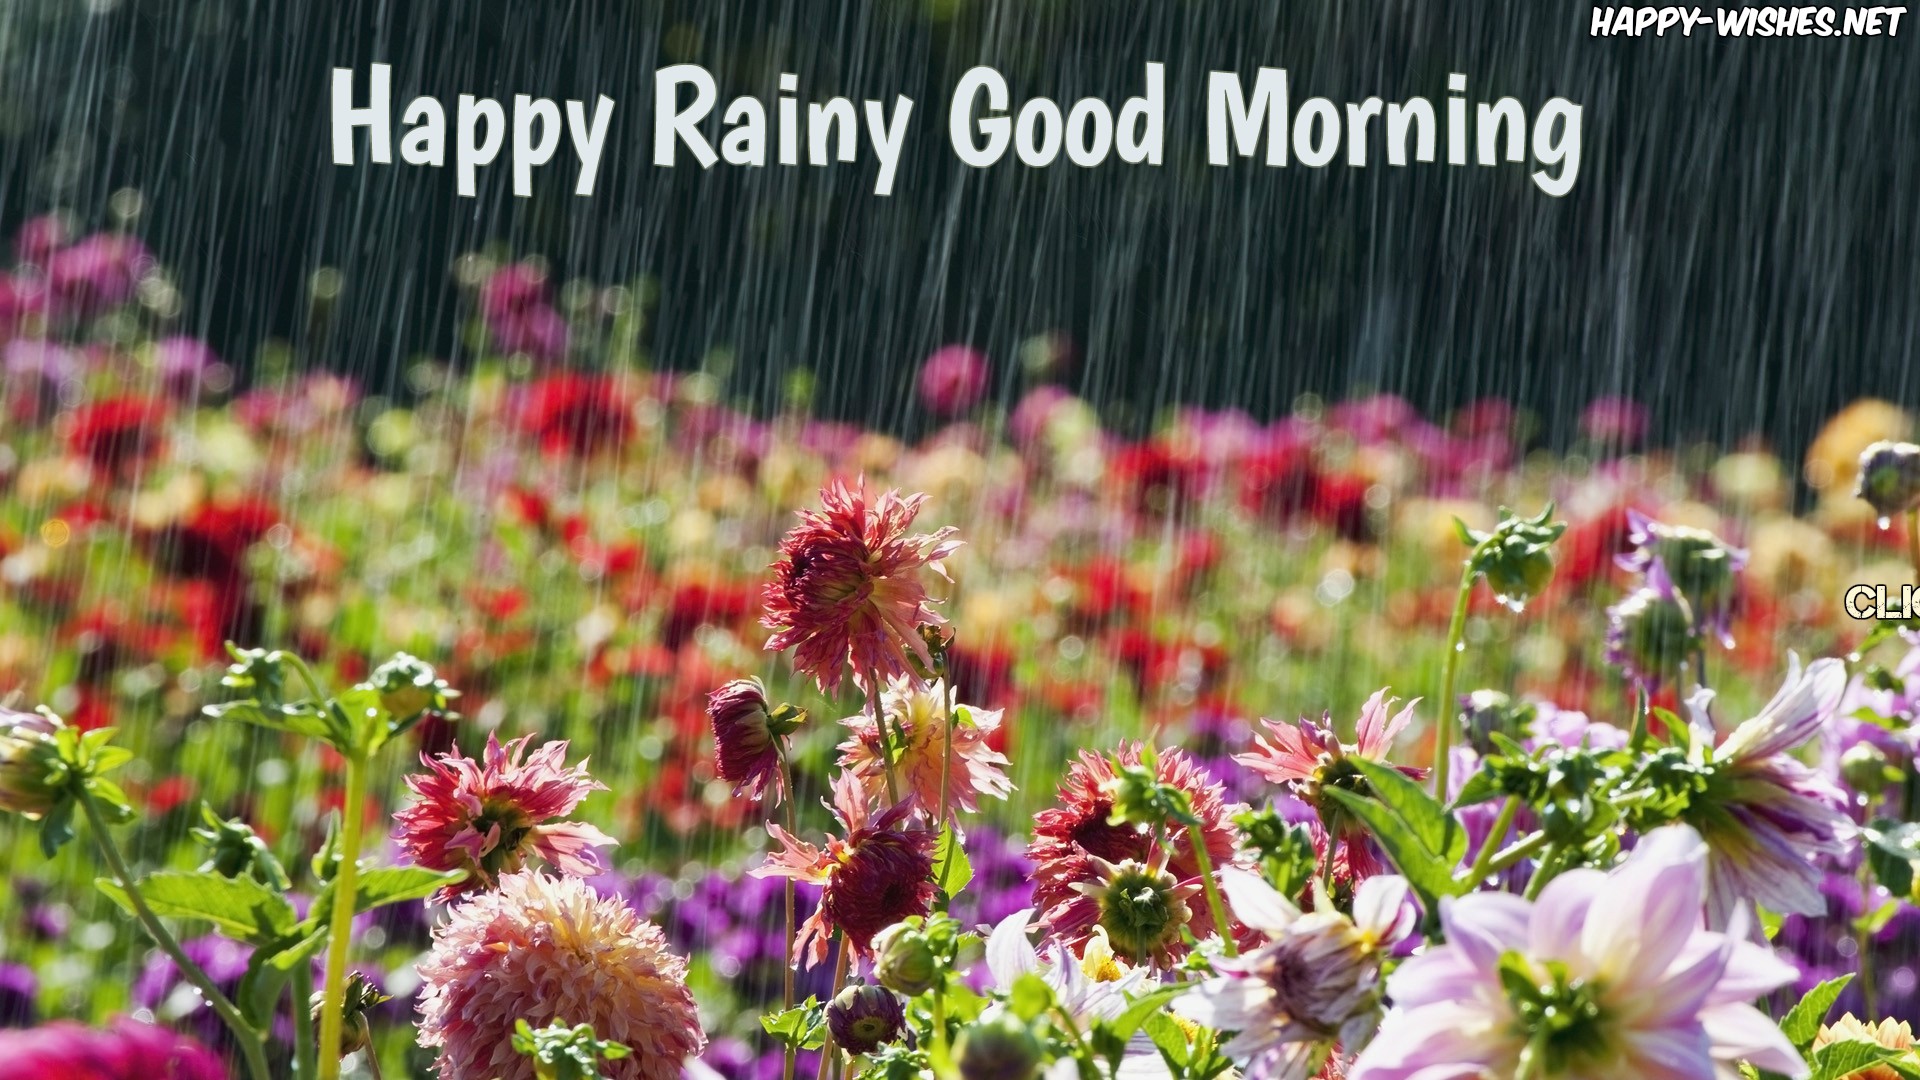 Happy Rainy Day Images